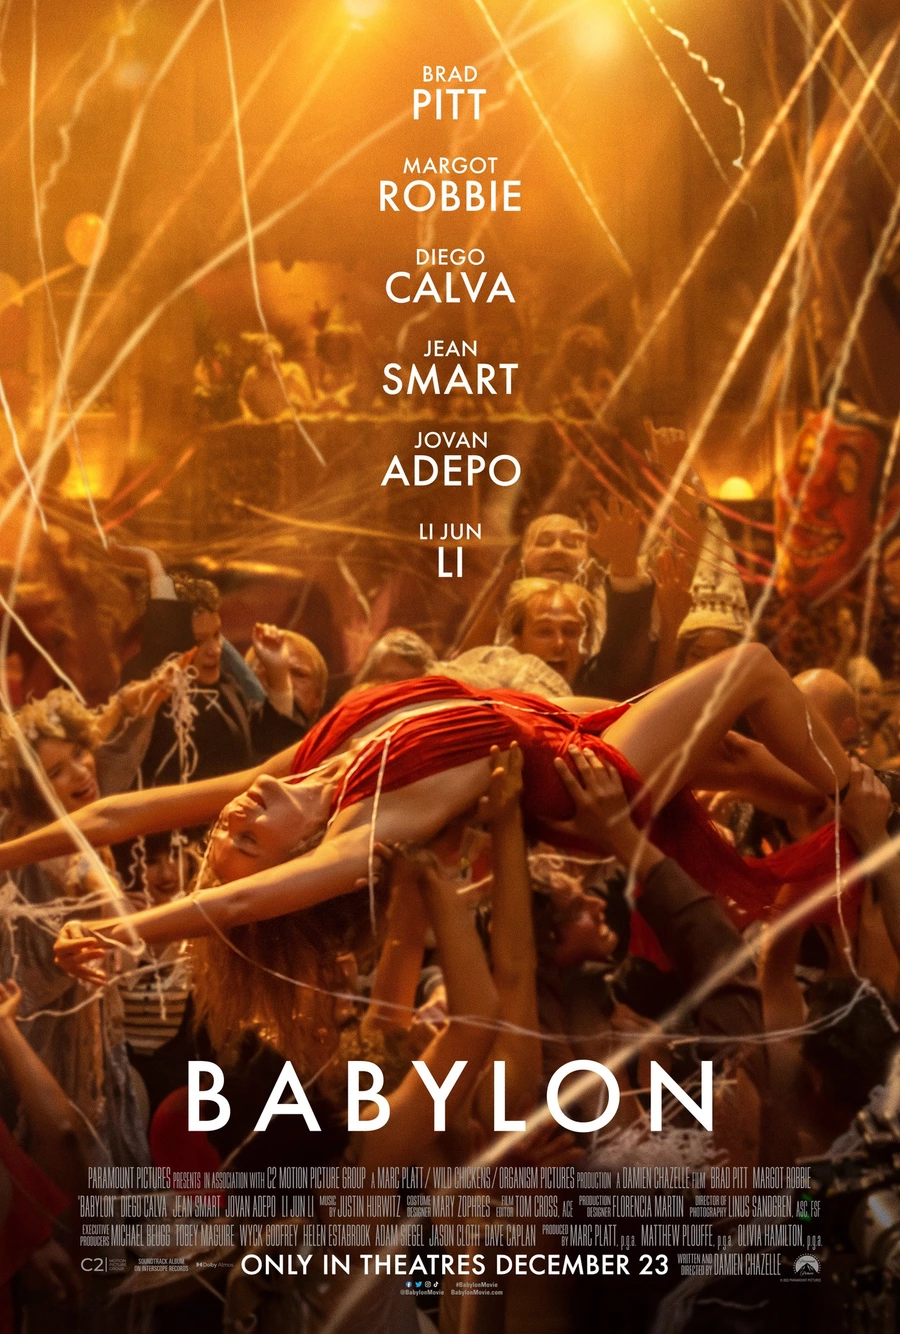 Novo poster para o filme de Damien Chazelle, Babylon, estrelado por Brad Pitt, Margot Robbie e Diego Calva.. É uma história de ambição desenfreada e de excesso chocante, em que várias personagens atingem altos e sofrem quedas espantosas durante um período de decadência desenfreada e depravação no início de Hollywood.

Nas salas de cinema a partir de 19 de Janeiro.